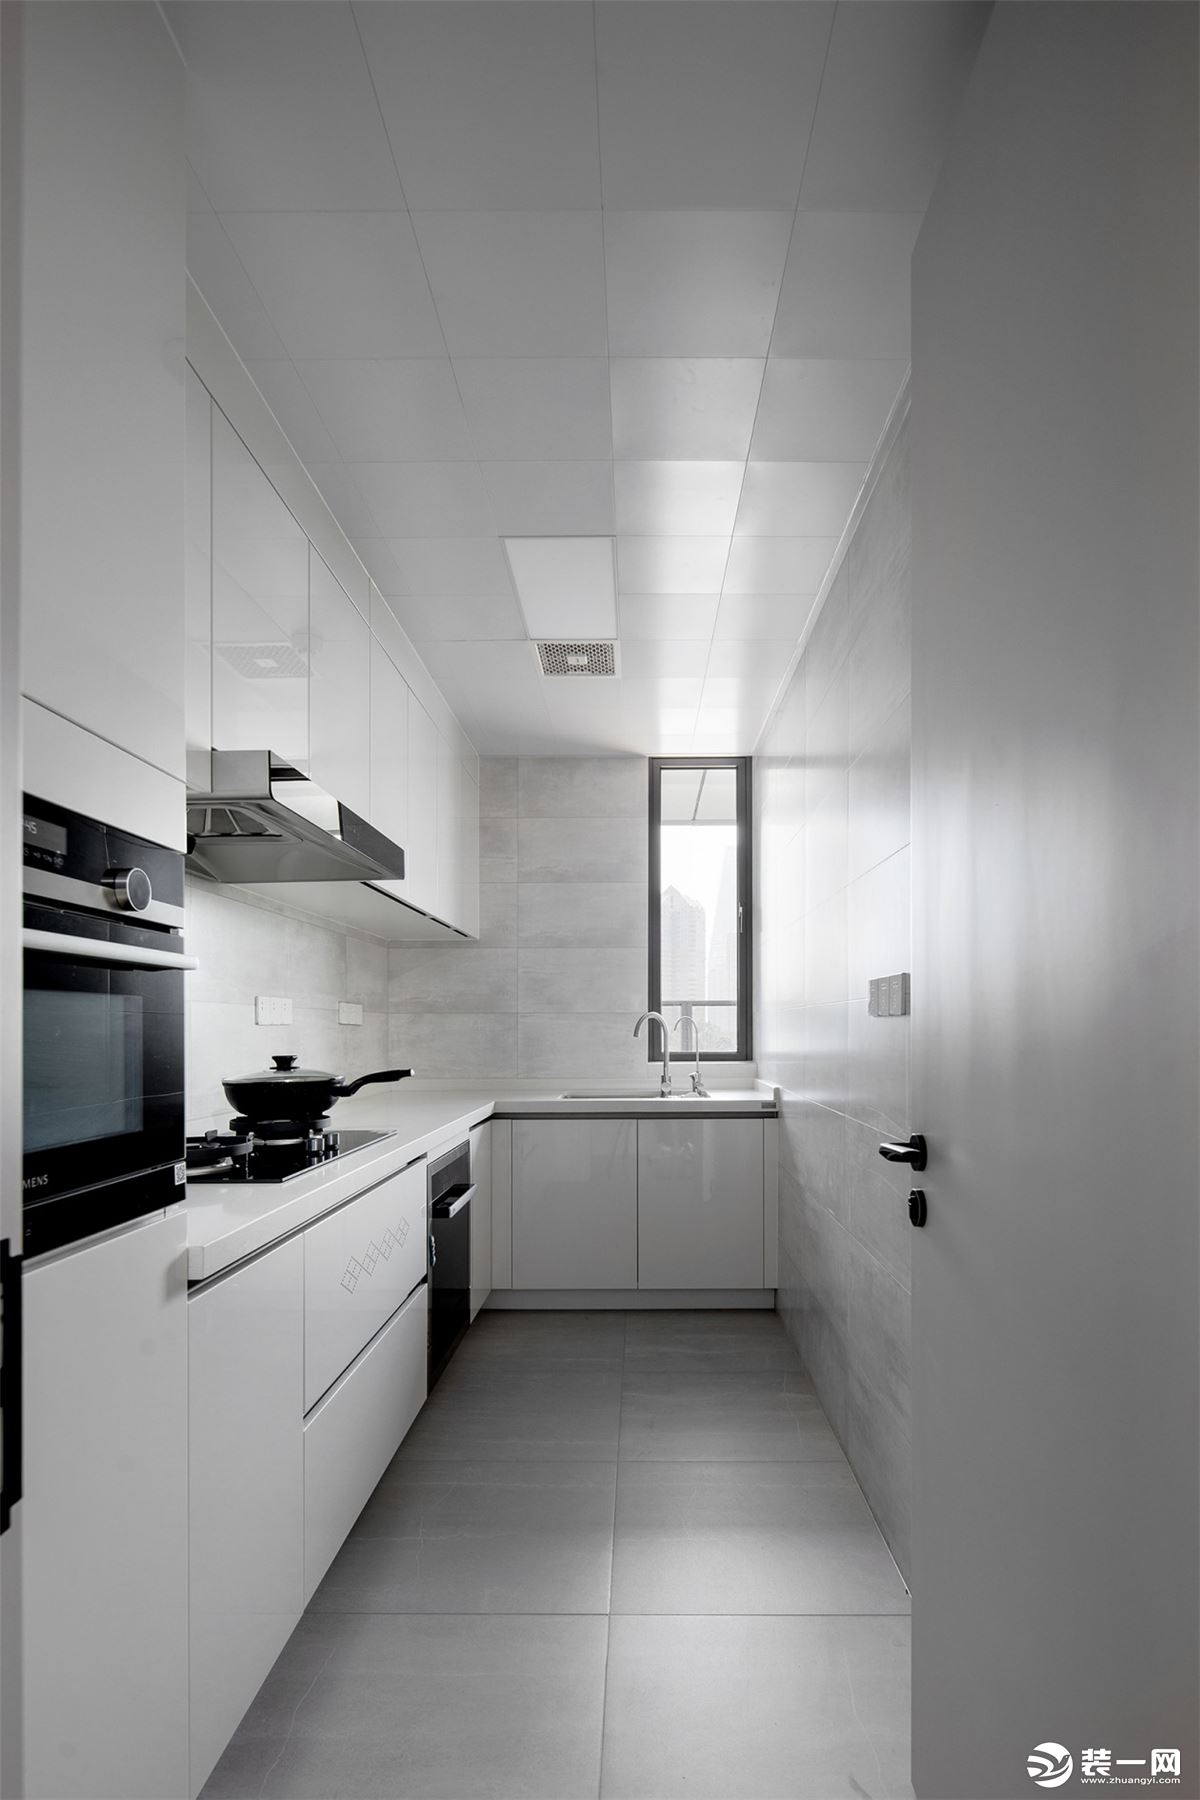 厨房素雅大气，浅灰色地砖搭配浅色纹理墙砖和白色橱柜，纯净的配色勾勒出简约大气的烹饪空间。